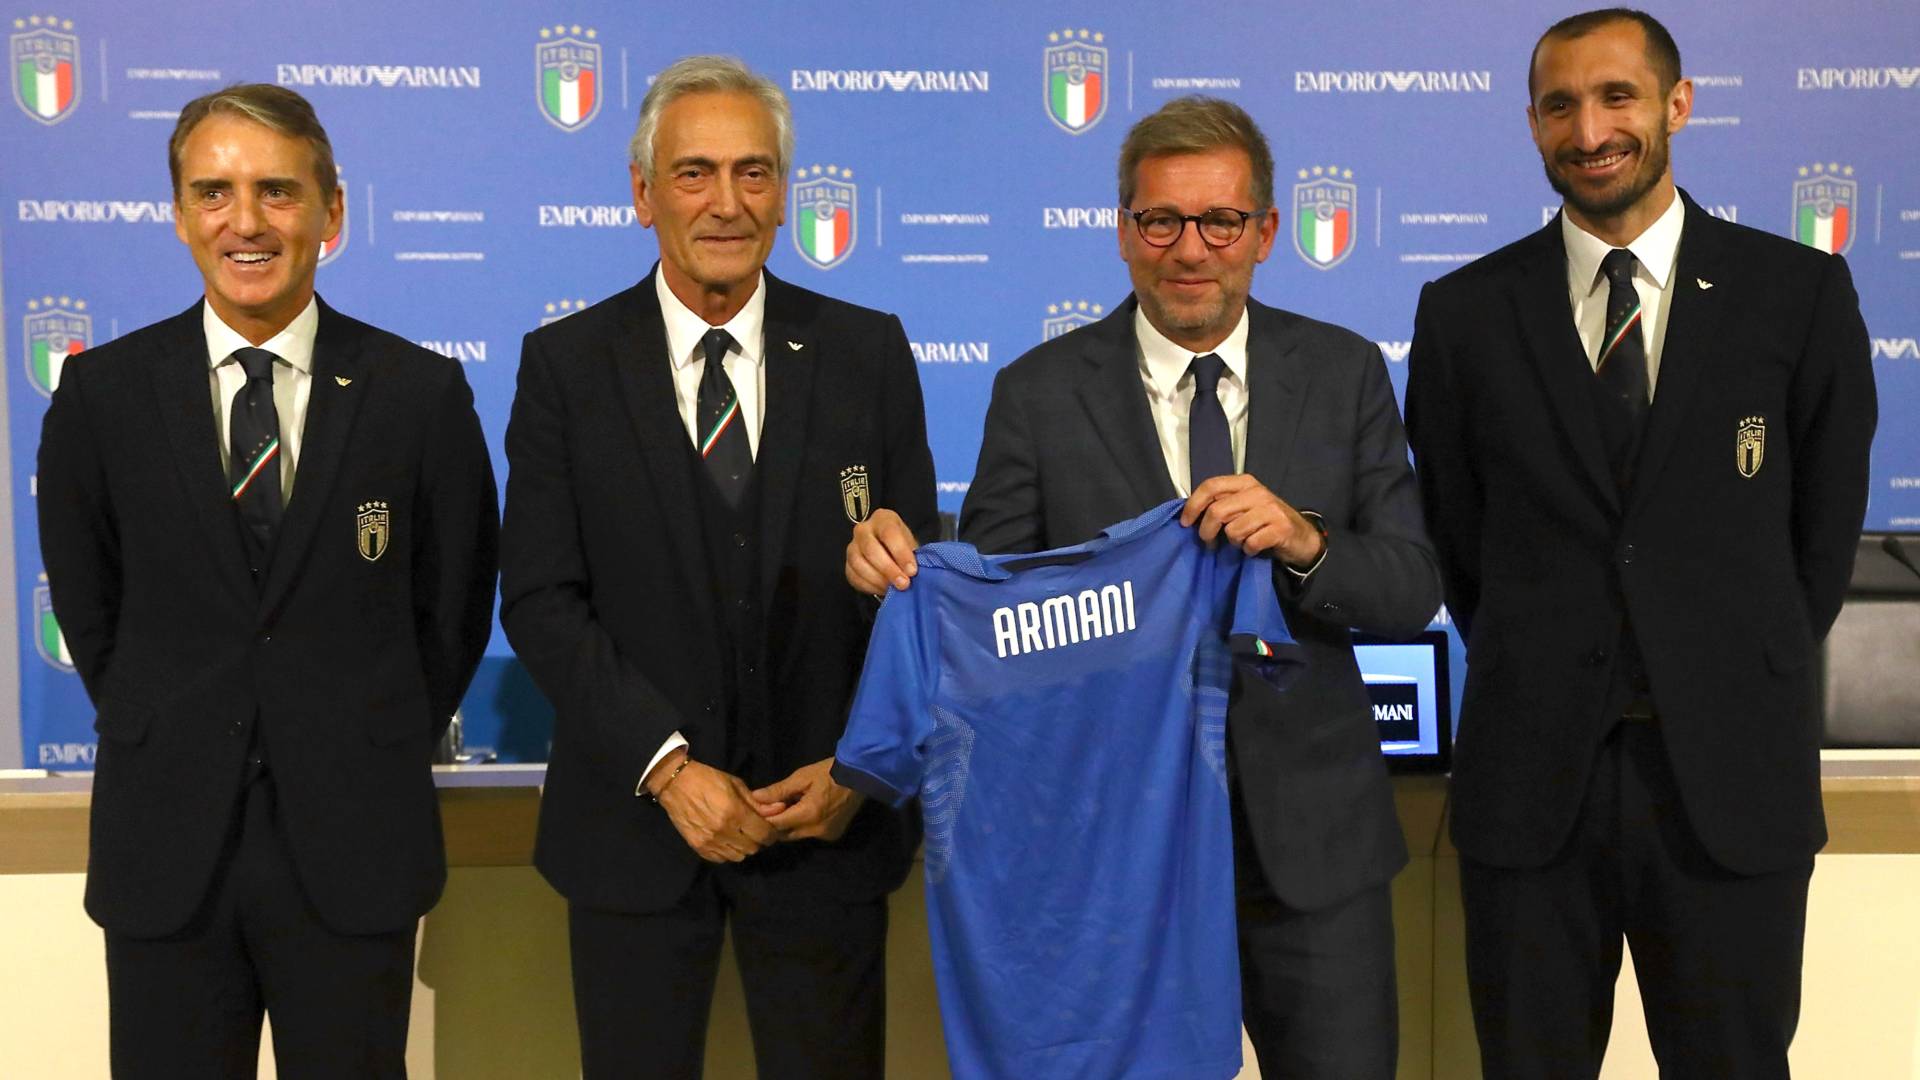 イタリア代表が25年ぶりにアルマーニとコラボ 新スーツは東京五輪世代も採用へ Goal Com